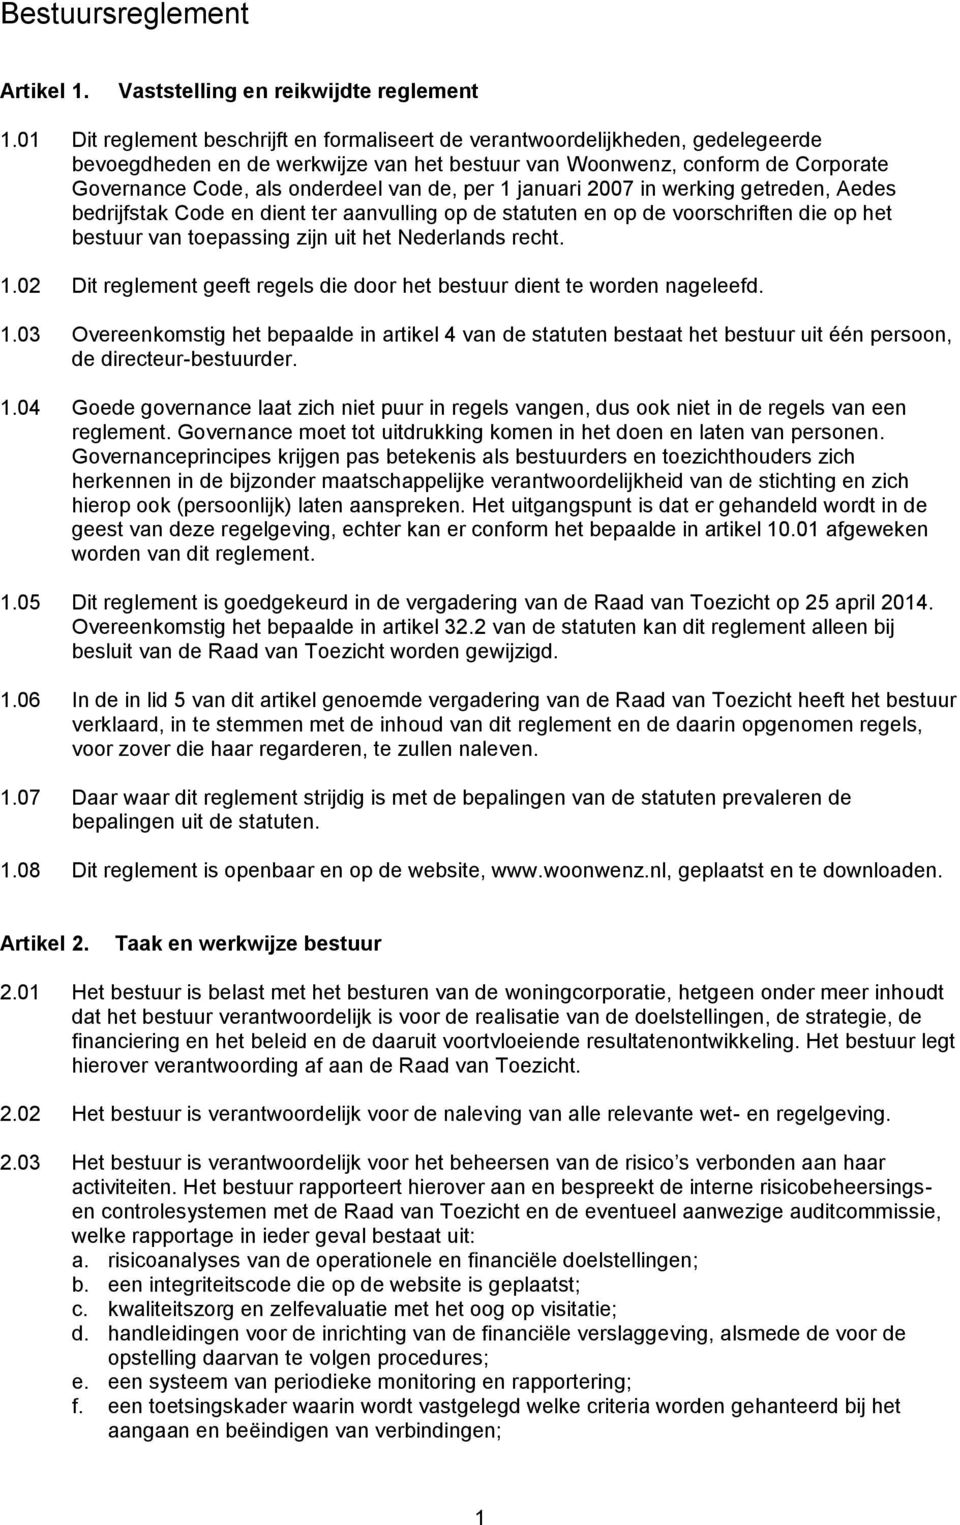 de, per 1 januari 2007 in werking getreden, Aedes bedrijfstak Code en dient ter aanvulling op de statuten en op de voorschriften die op het bestuur van toepassing zijn uit het Nederlands recht. 1.02 Dit reglement geeft regels die door het bestuur dient te worden nageleefd.